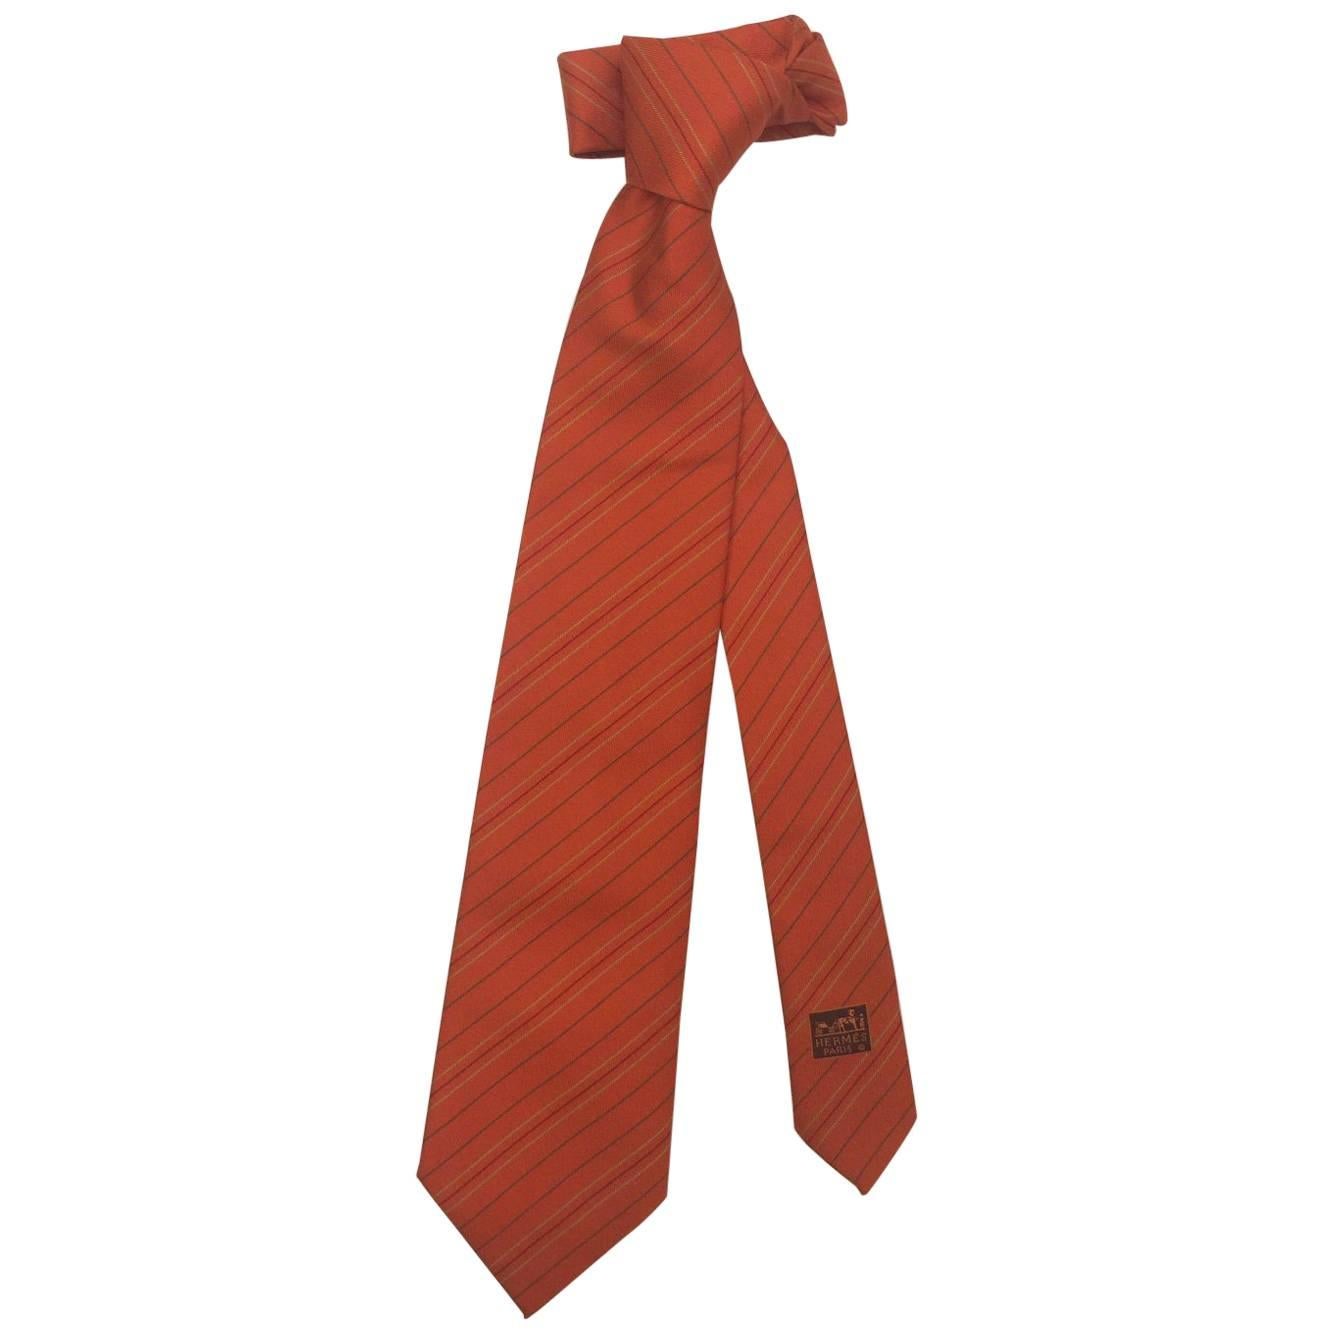 Men's Handsome Hermes Heavy Silk Classic Stripe Neck Tie in Verte Orange, 58"L